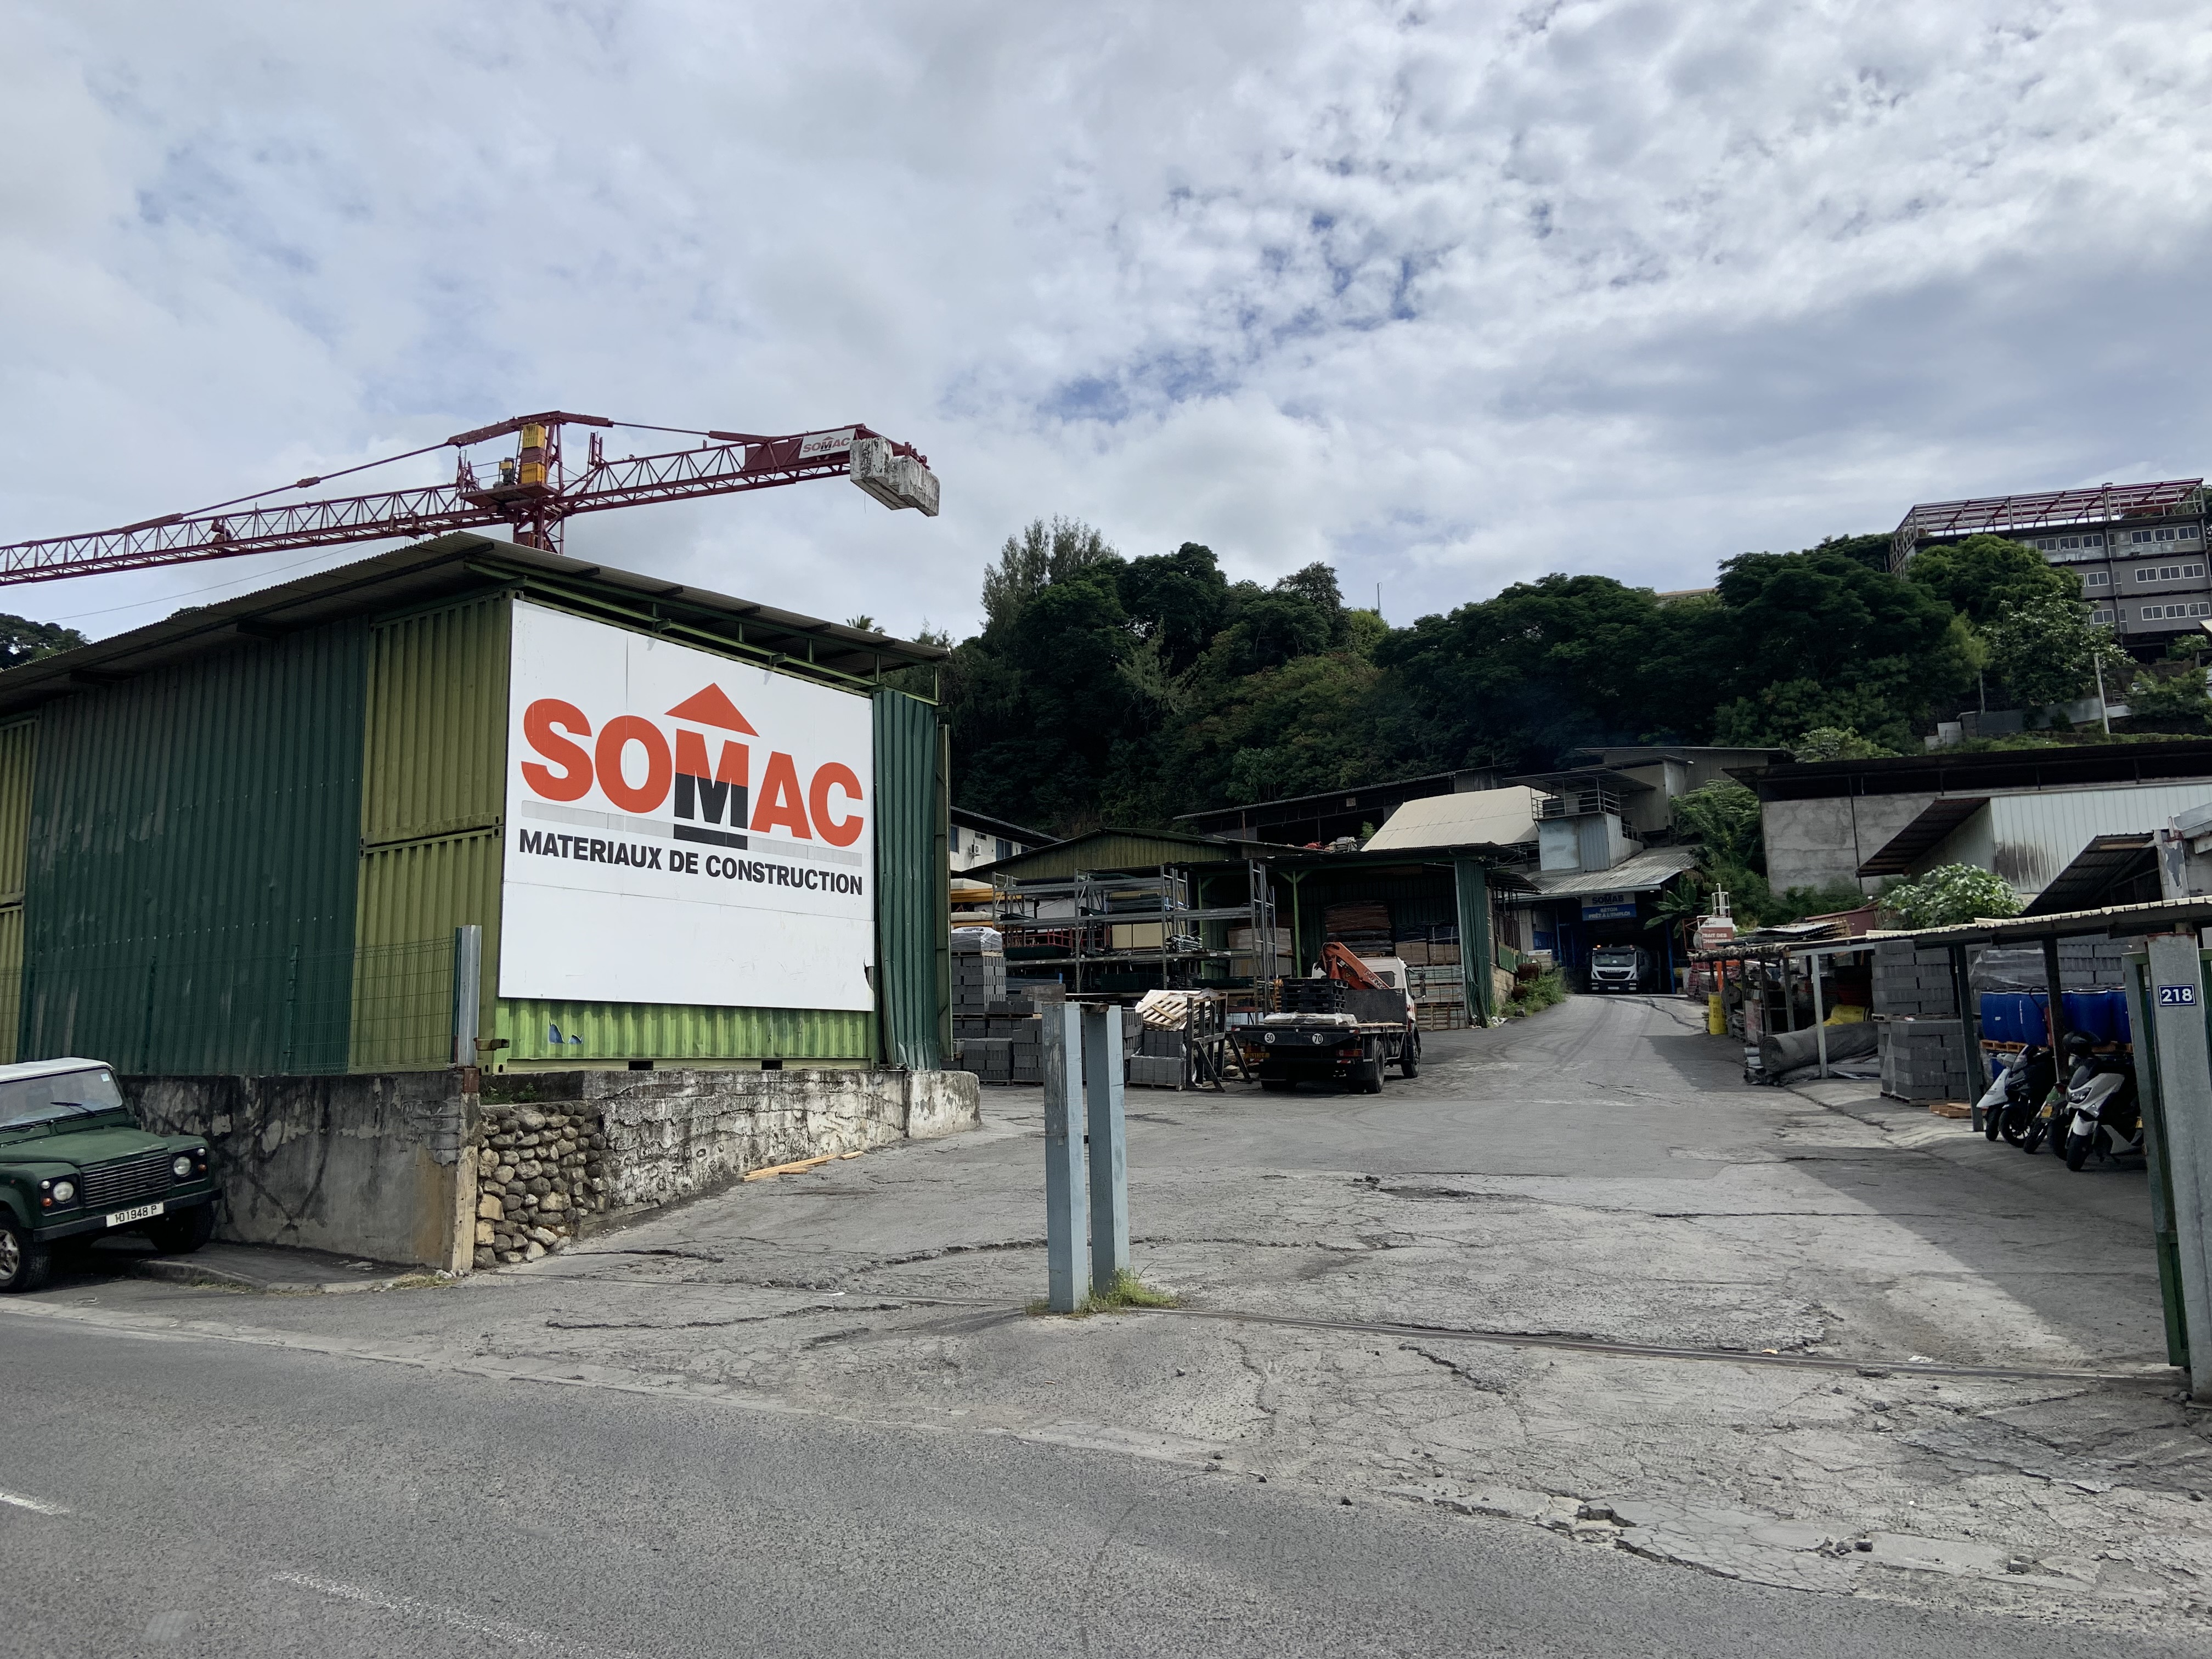 Selon Otahi, les employés de Somac n'étaient pas au courant de la situation judiciaire dans laquelle était empêtrée l'entreprise. Crédit photo : Thibault Segalard.